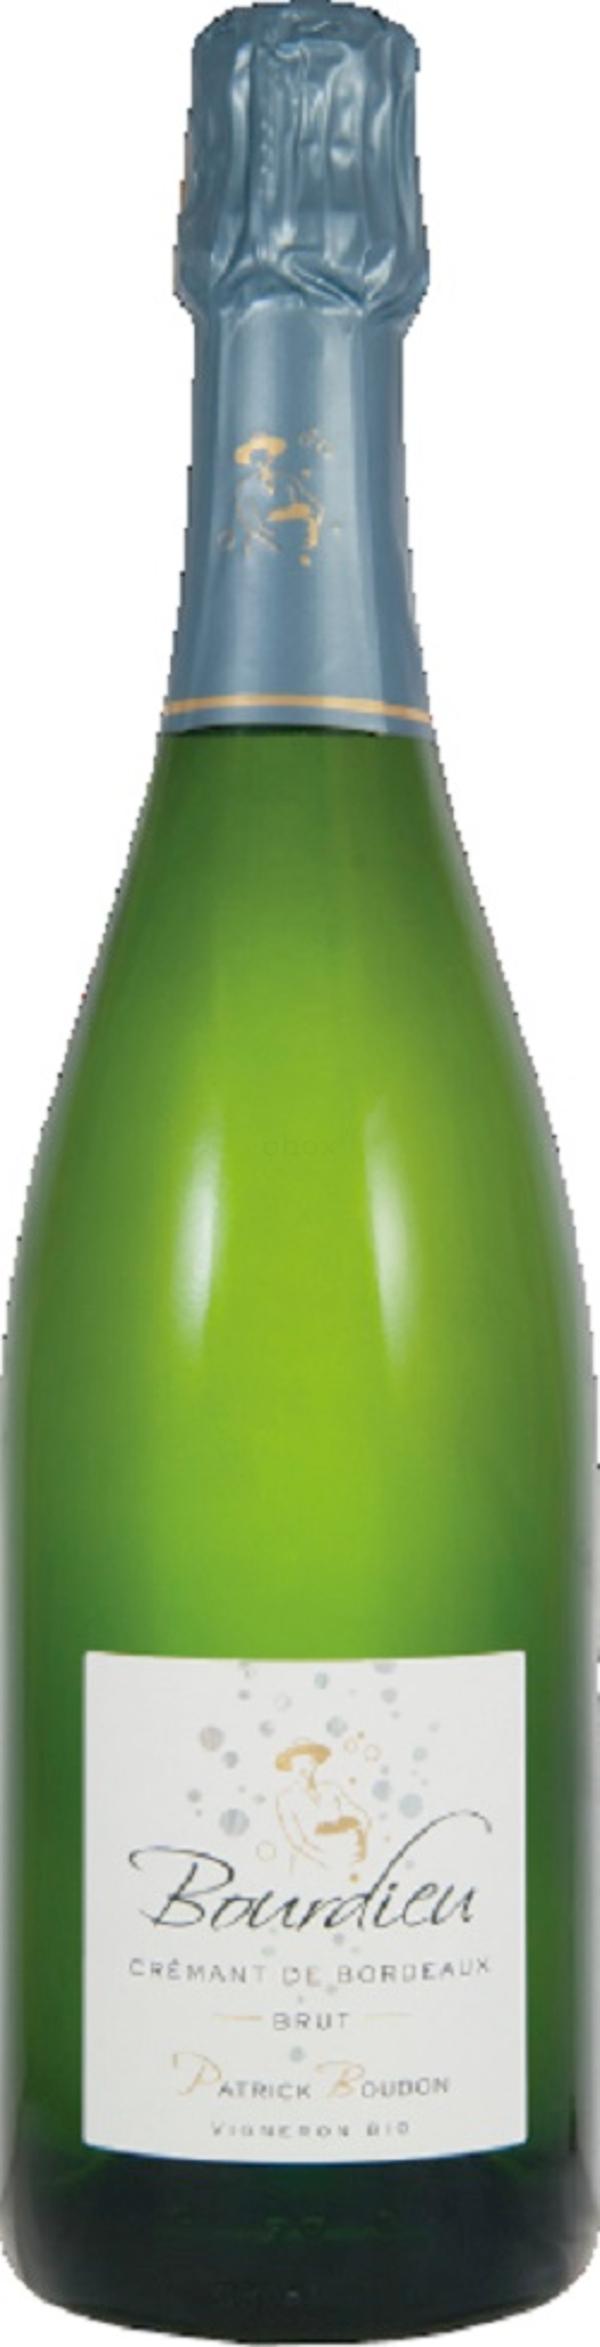 Produktfoto zu Crémant de Bordeaux AOP brut, 0,75 l